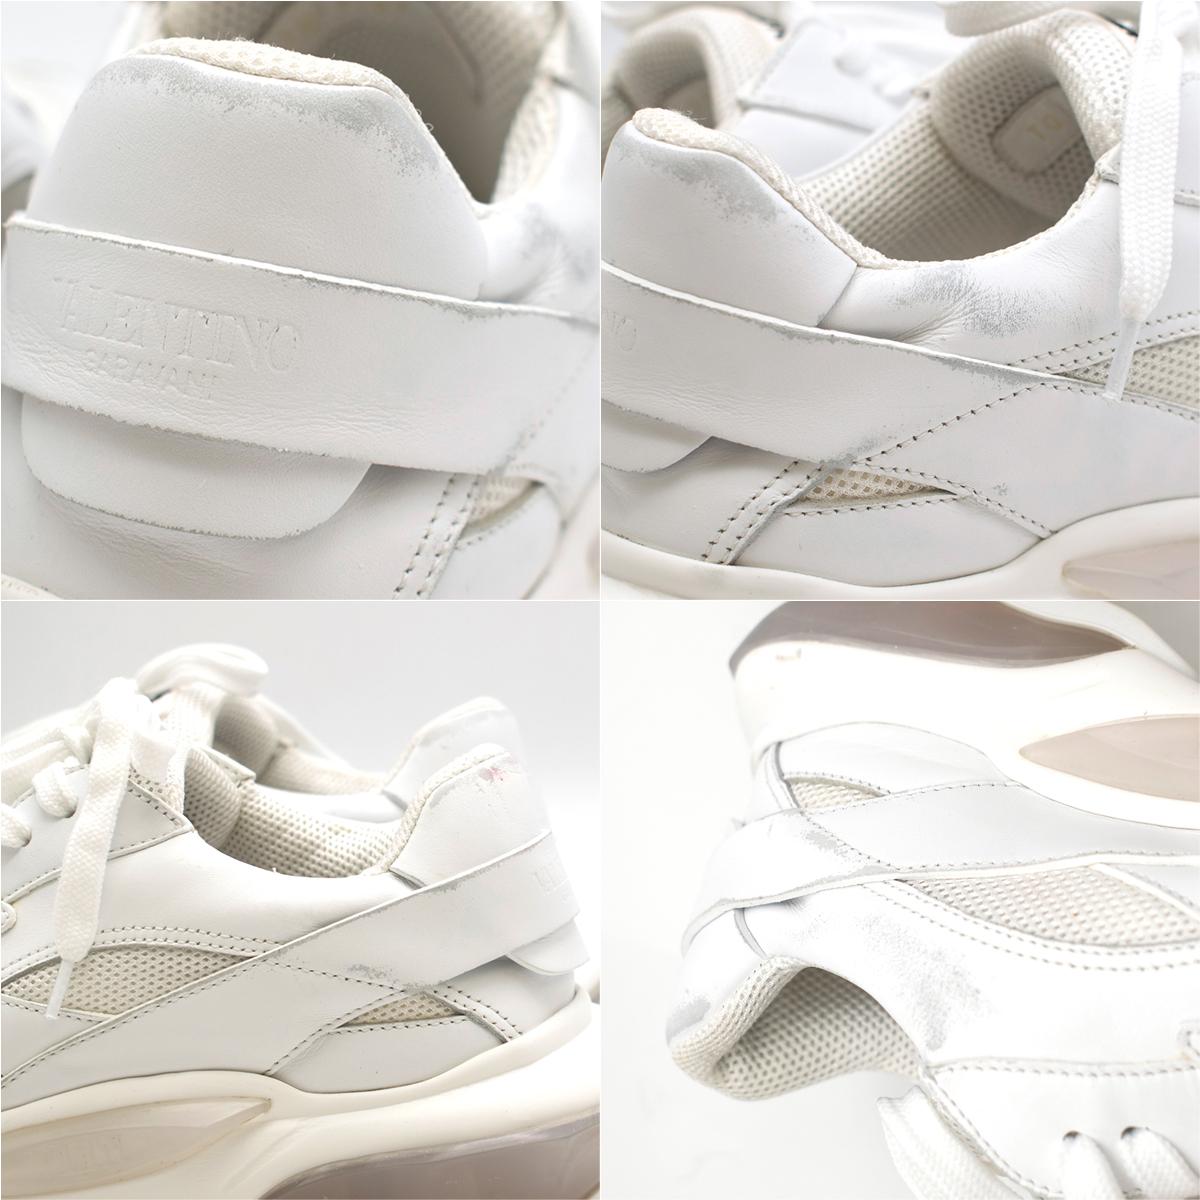 Valentino Garavani Bounce White Leather Sneakers SIZE 38.5 1